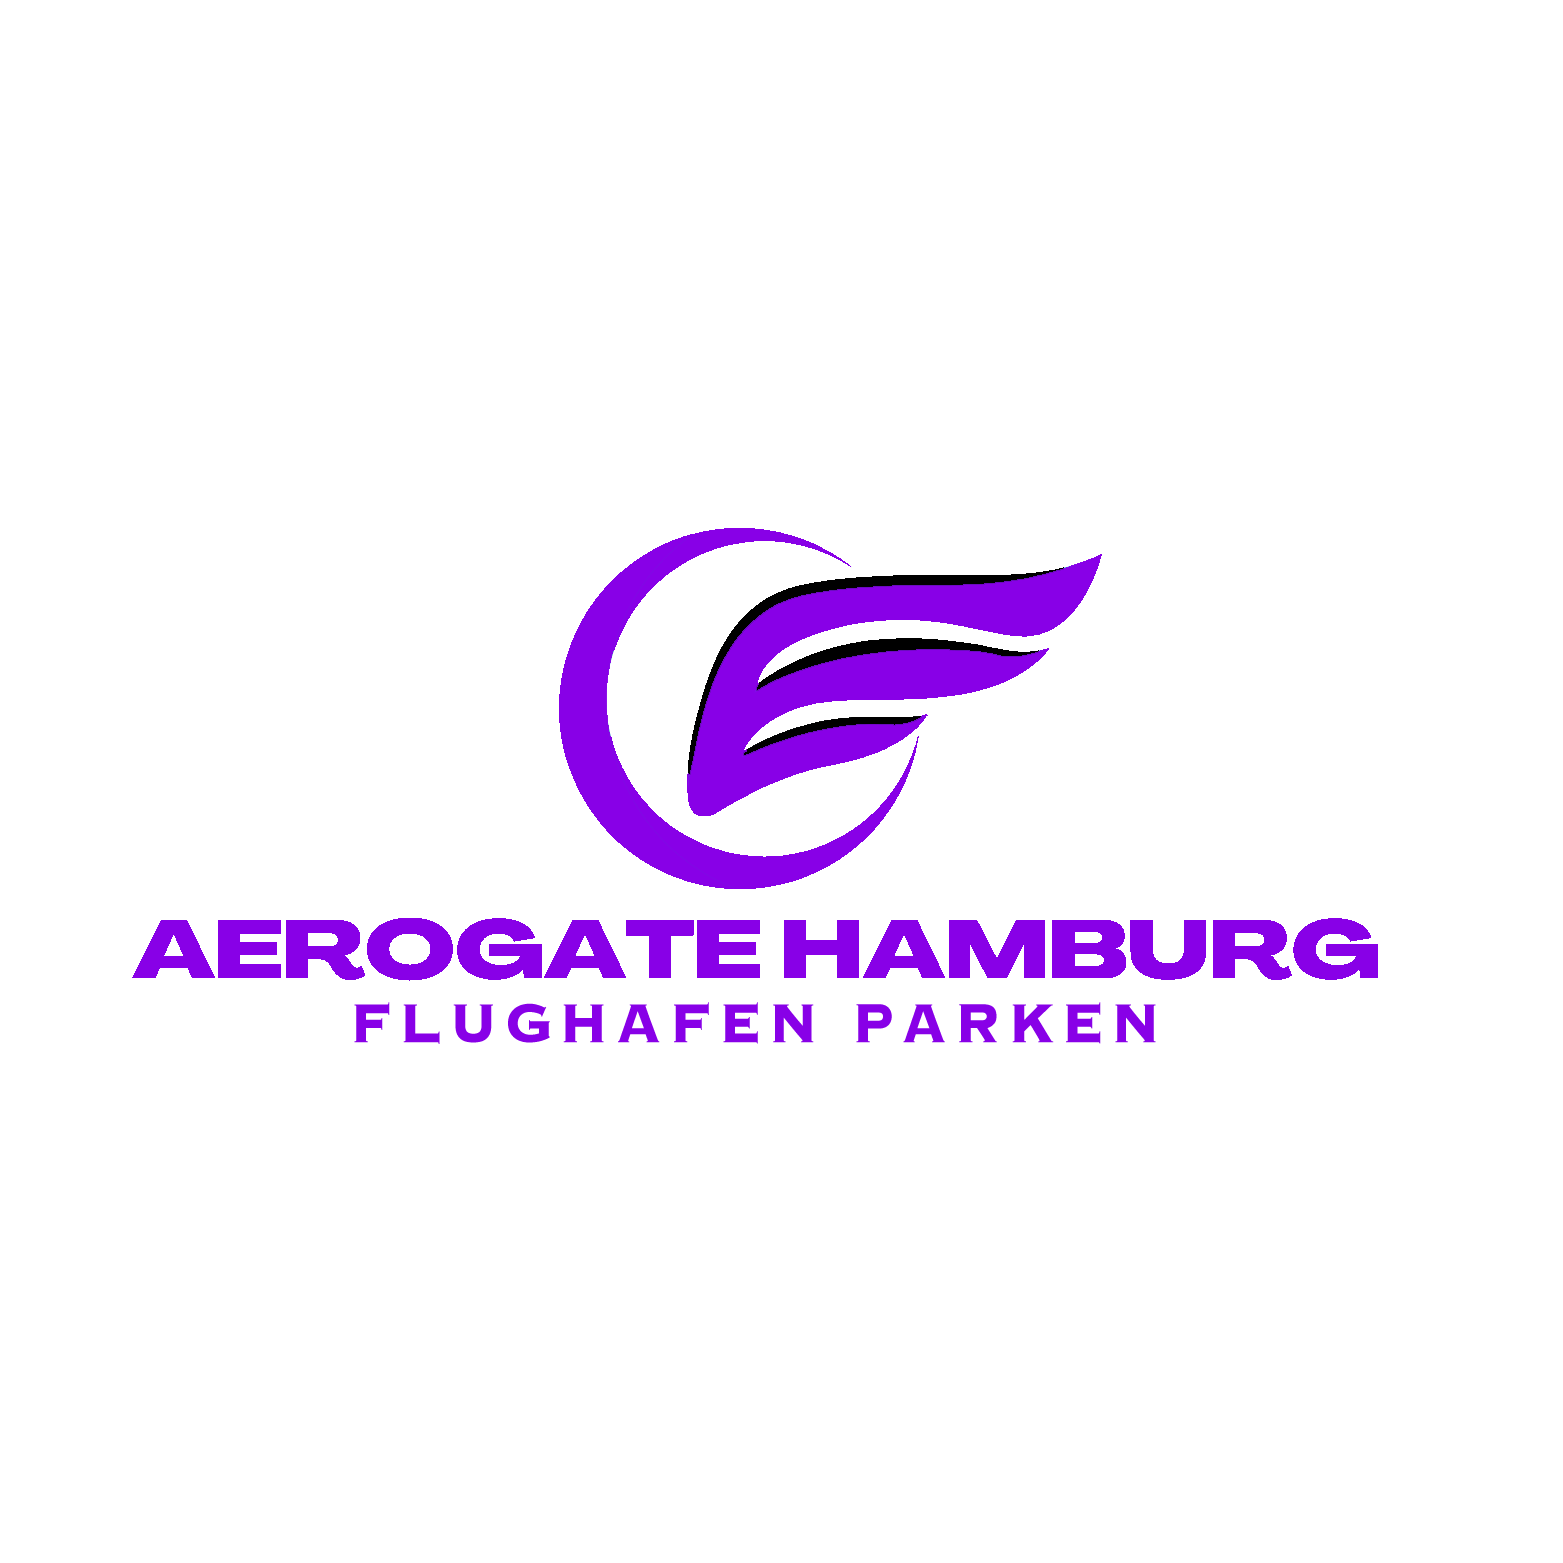 Aerogate Shuttle Hamburg logo